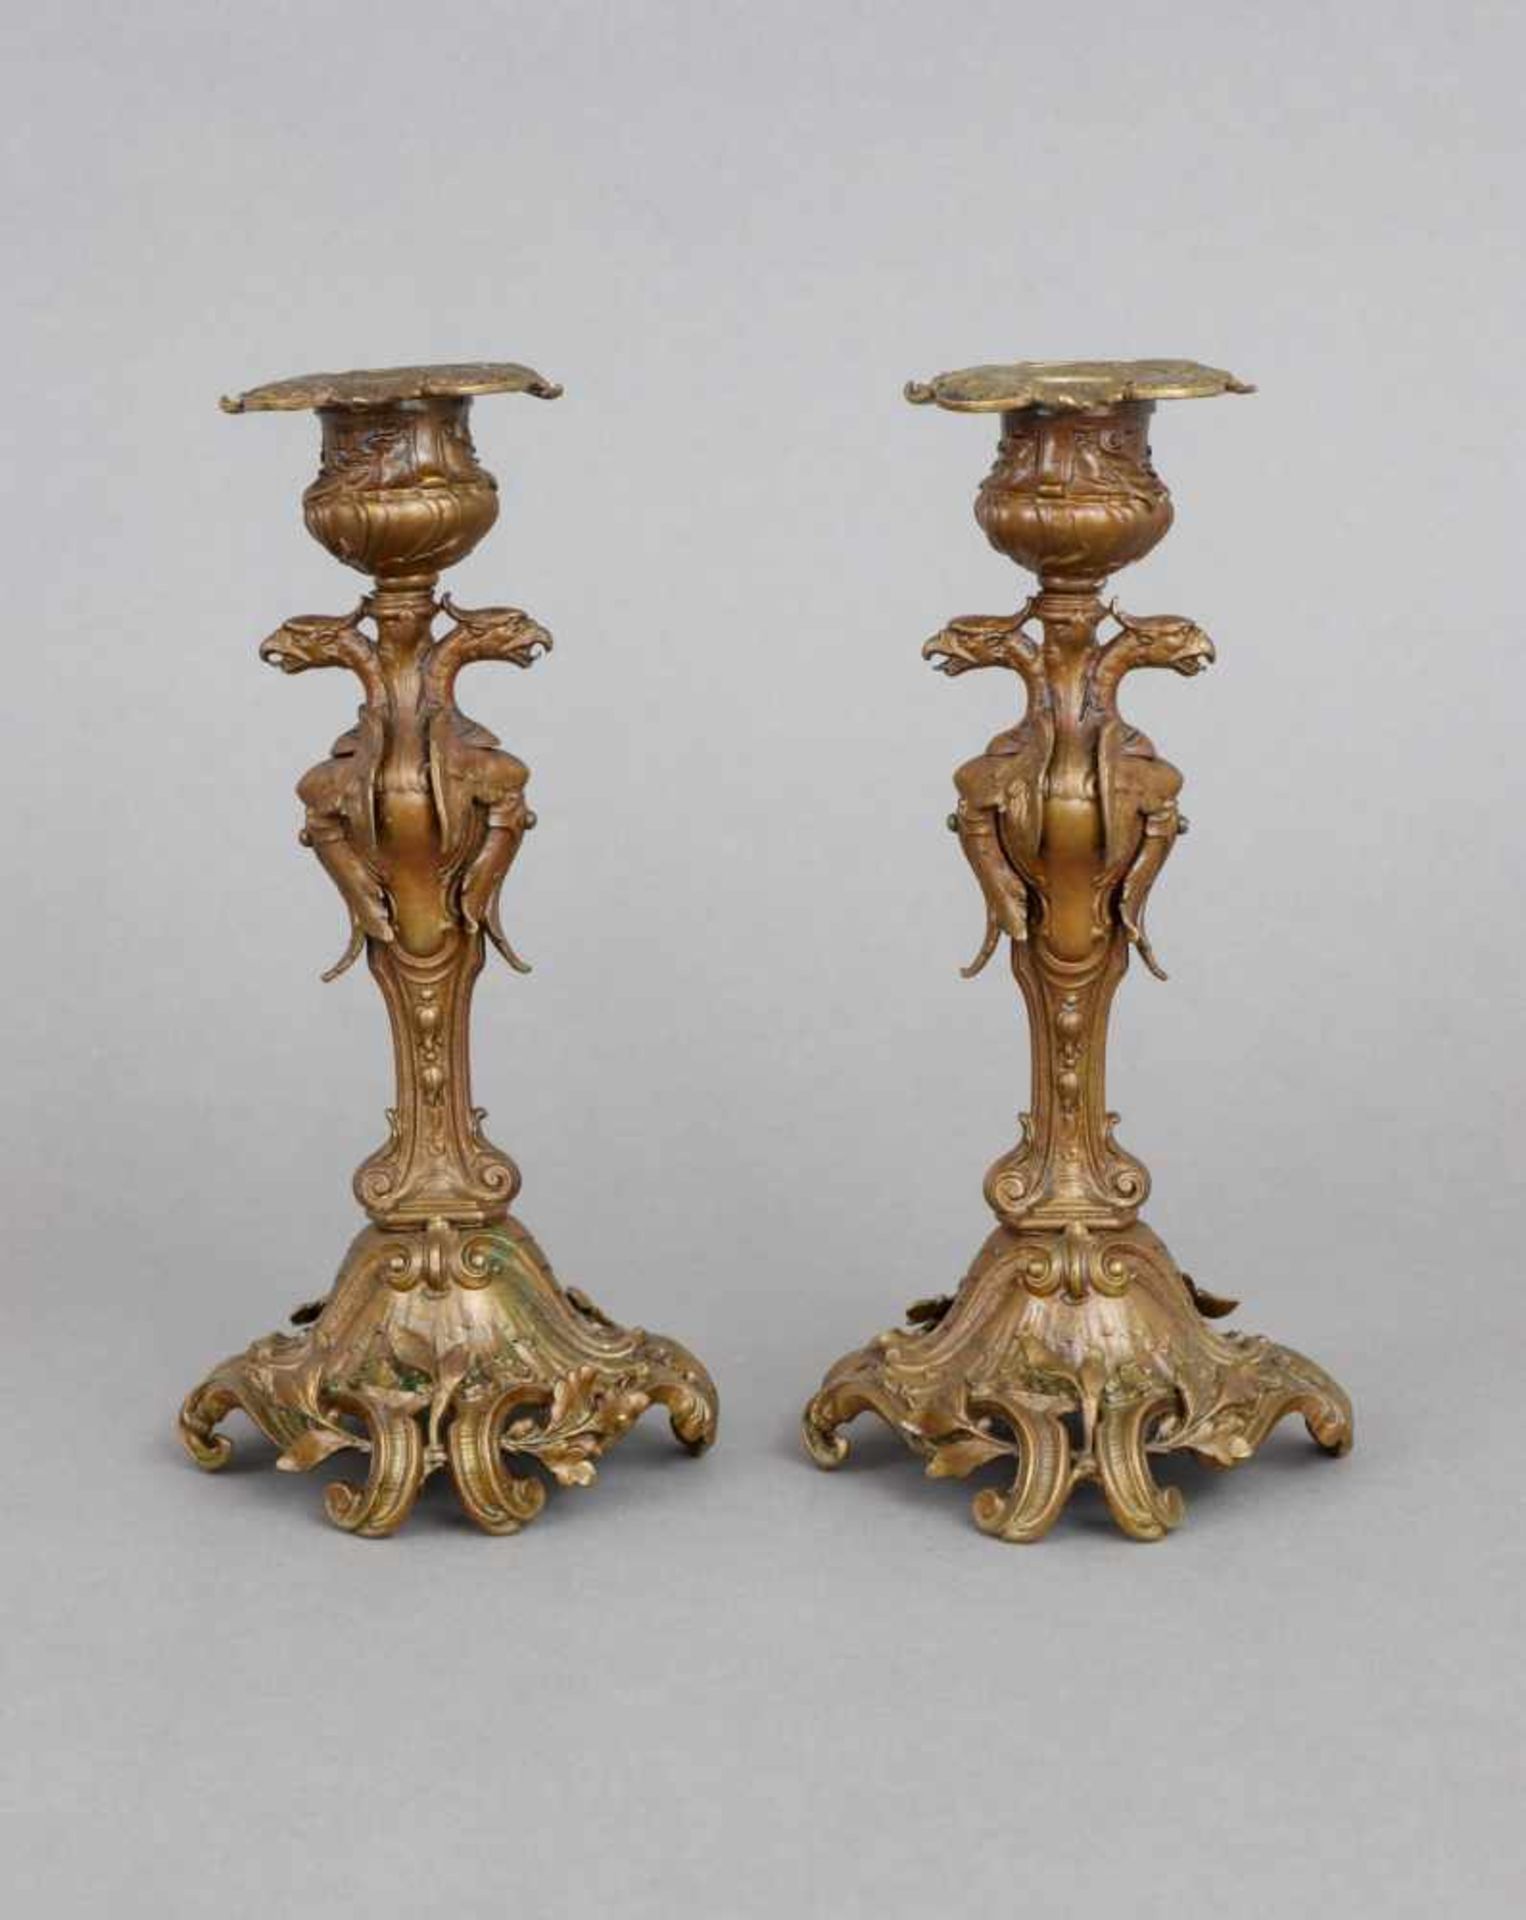 Paar Tischleuchter im Stile des EmpireBronze, Frankreich, Napoleon III. (2. Hälfte 19. Jhdt.),